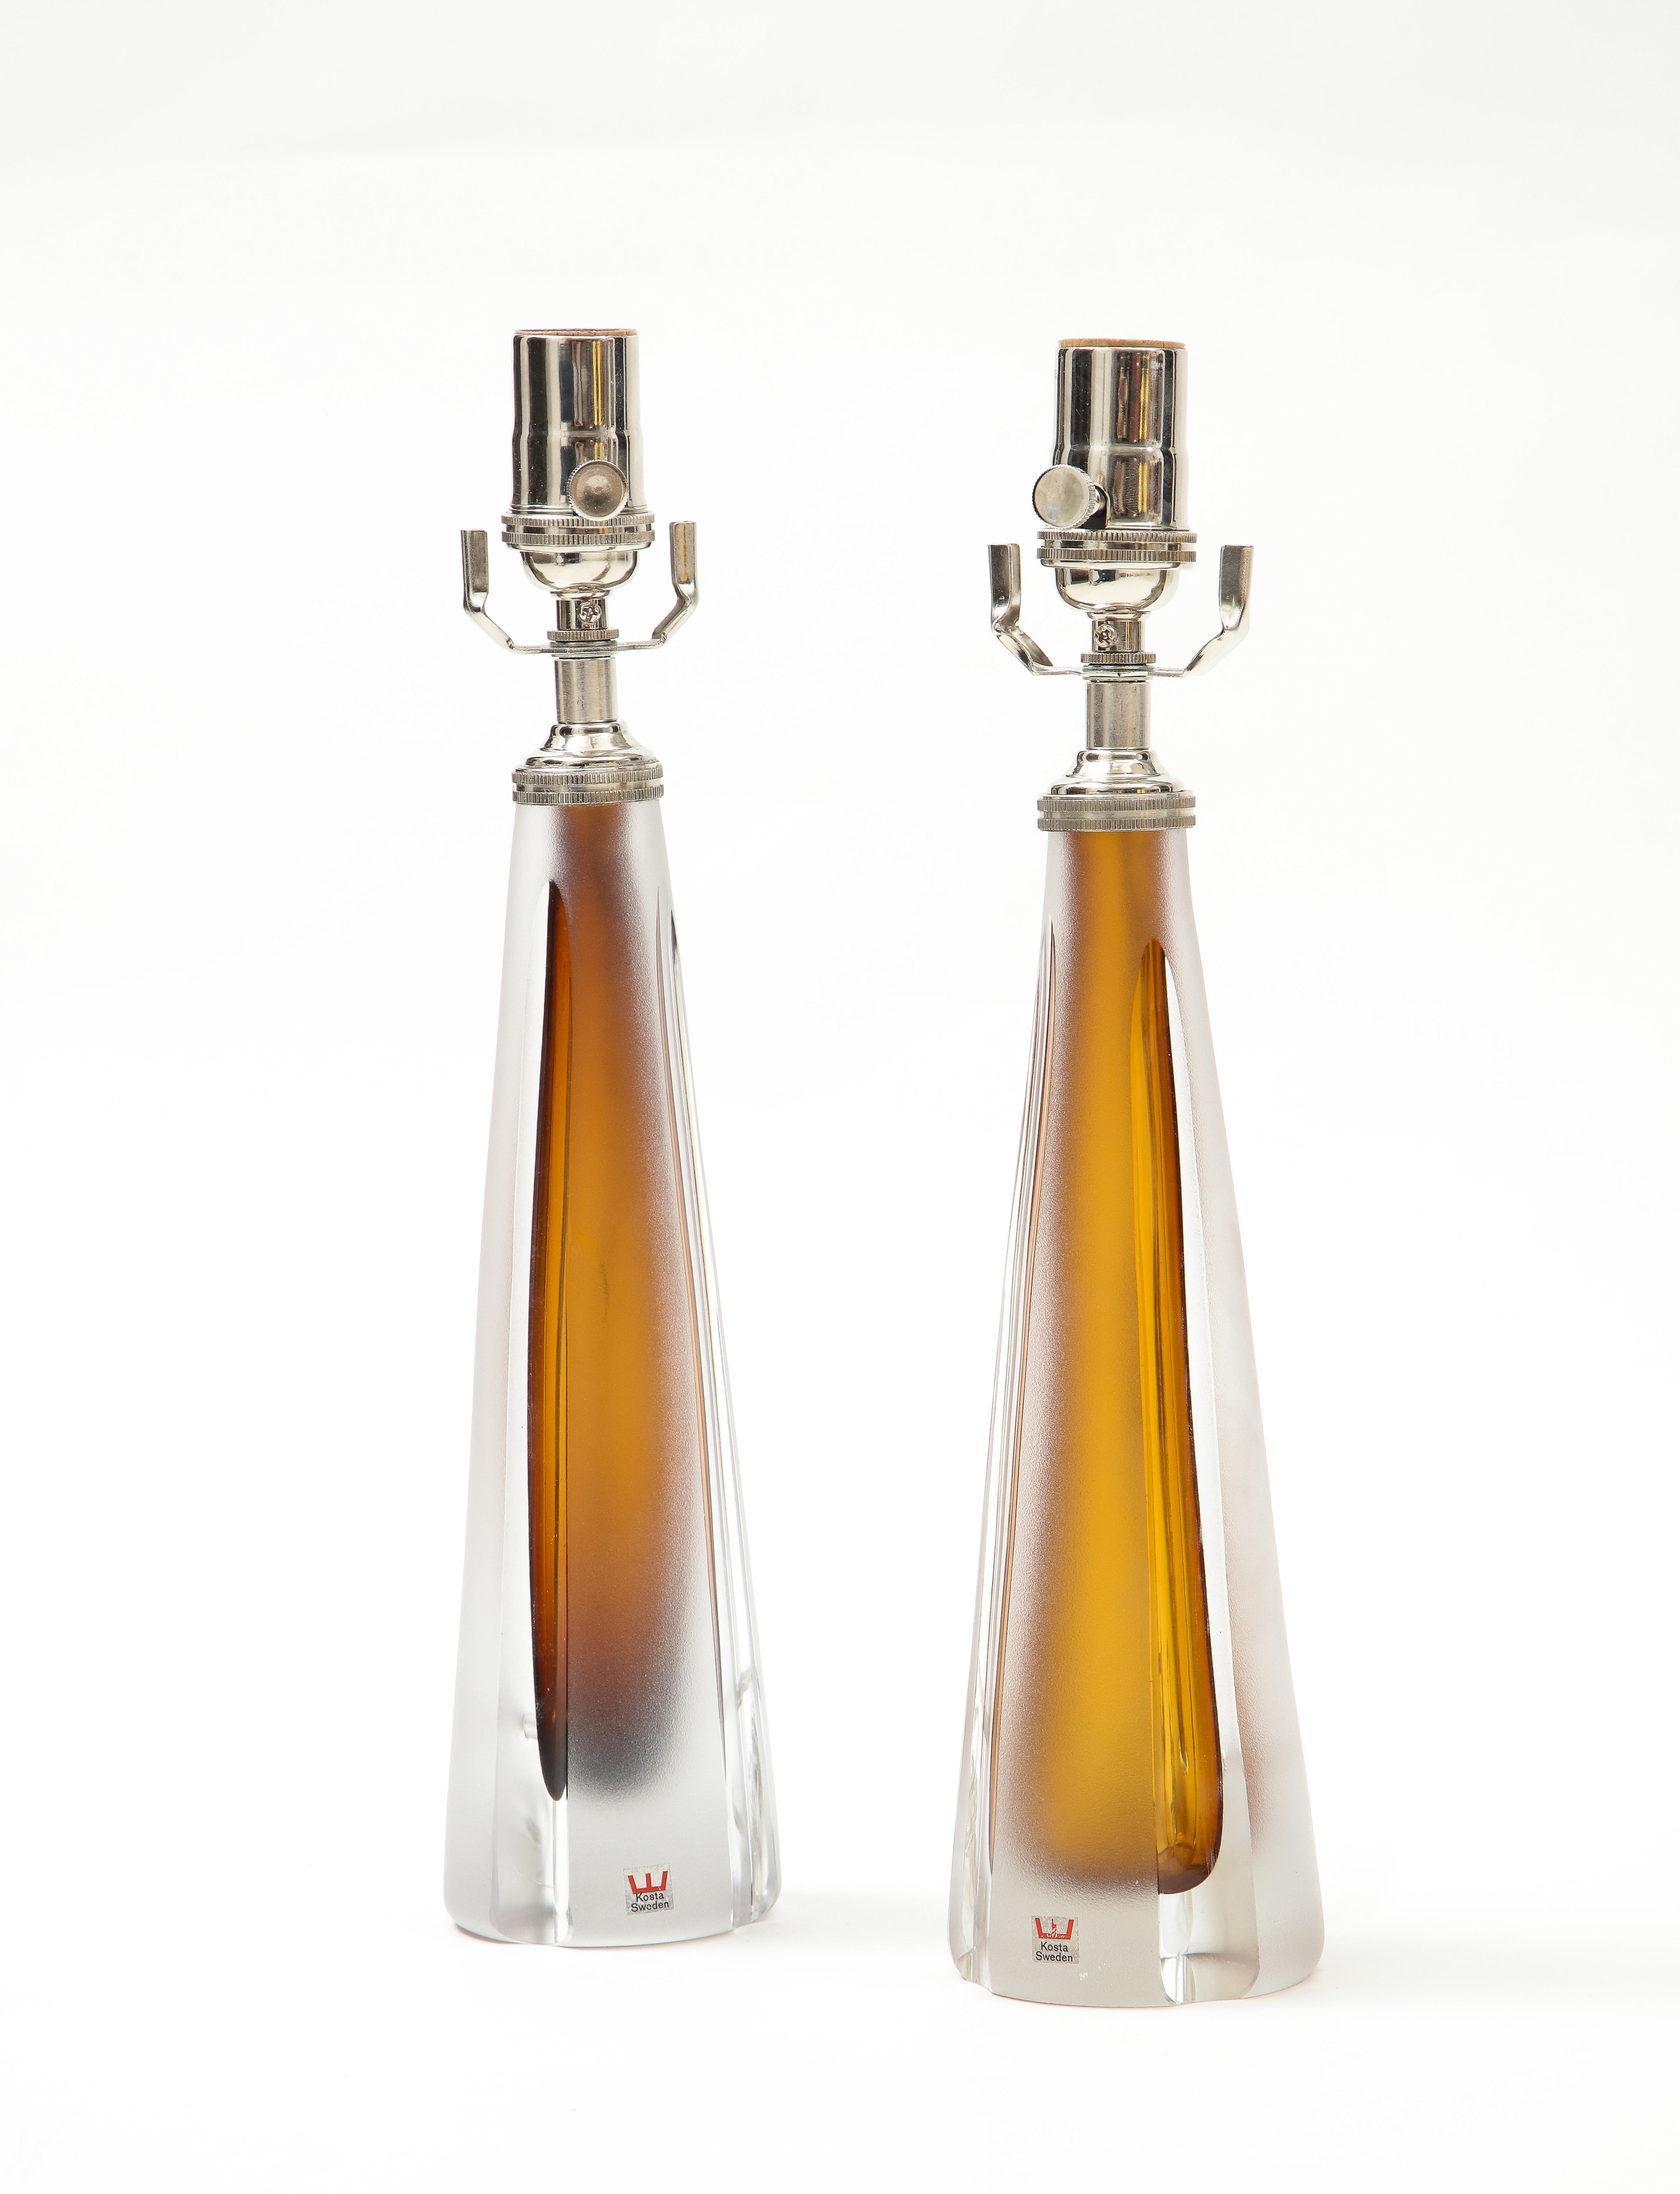 Schöne Paar Parfümflasche geformt Lampen in einem atemberaubenden Cognac gefrostet farbigen Glas, das 
ist mit einem glatten, klaren Glas gepaart.
die Lampen wurden für die USA neu verkabelt, mit polierten Chrombeschlägen, und sie nehmen